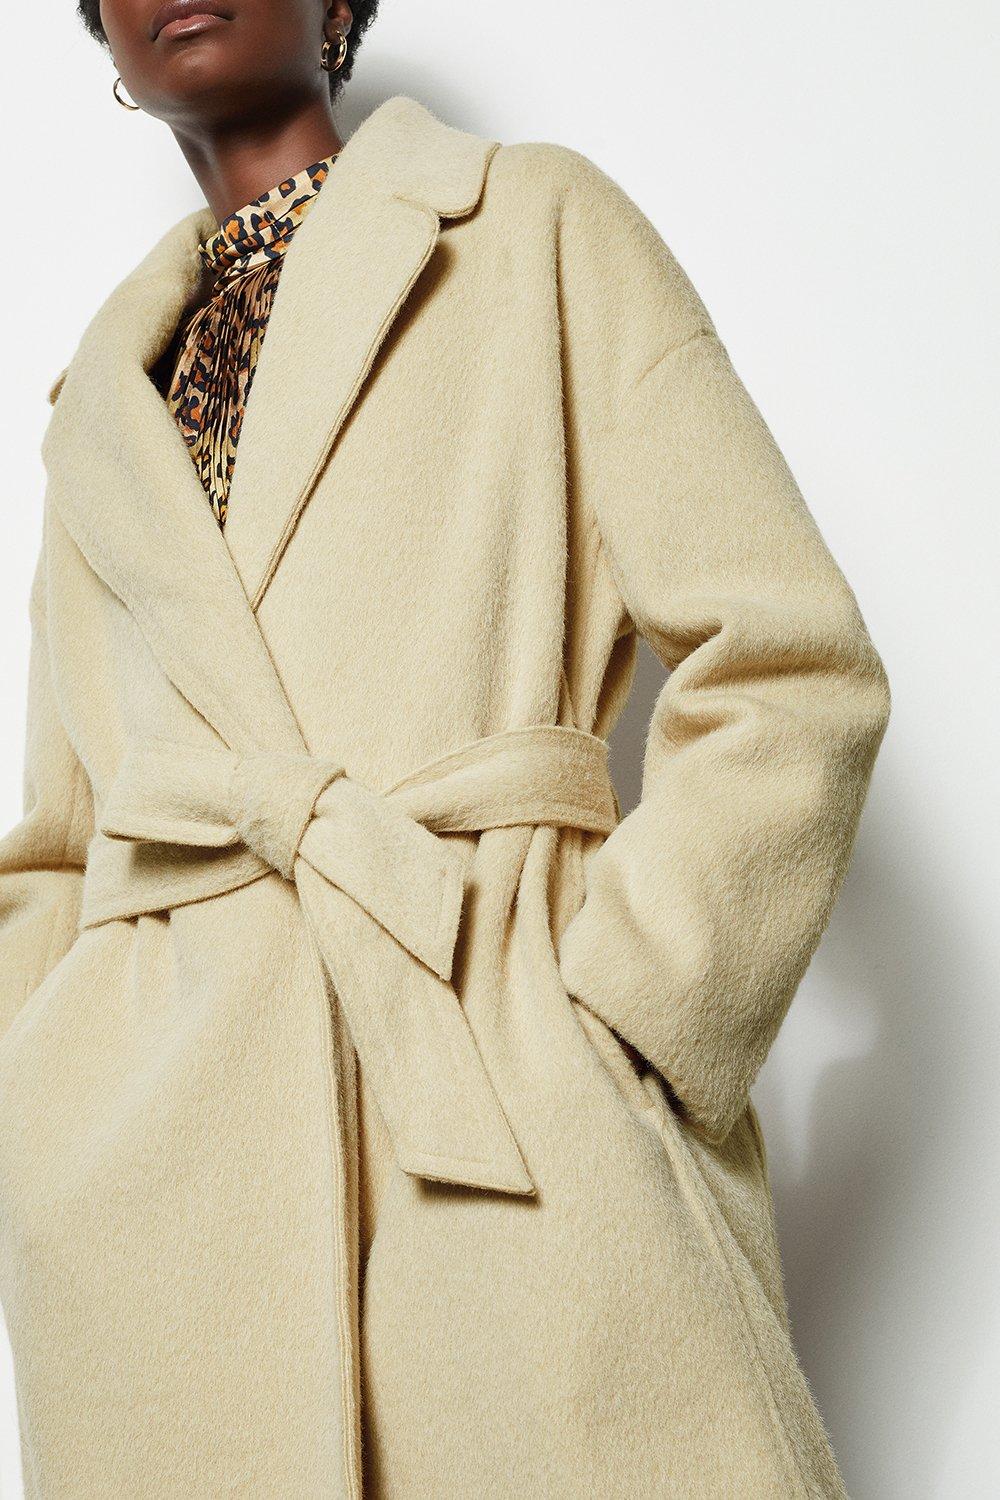 shawl coats wraps